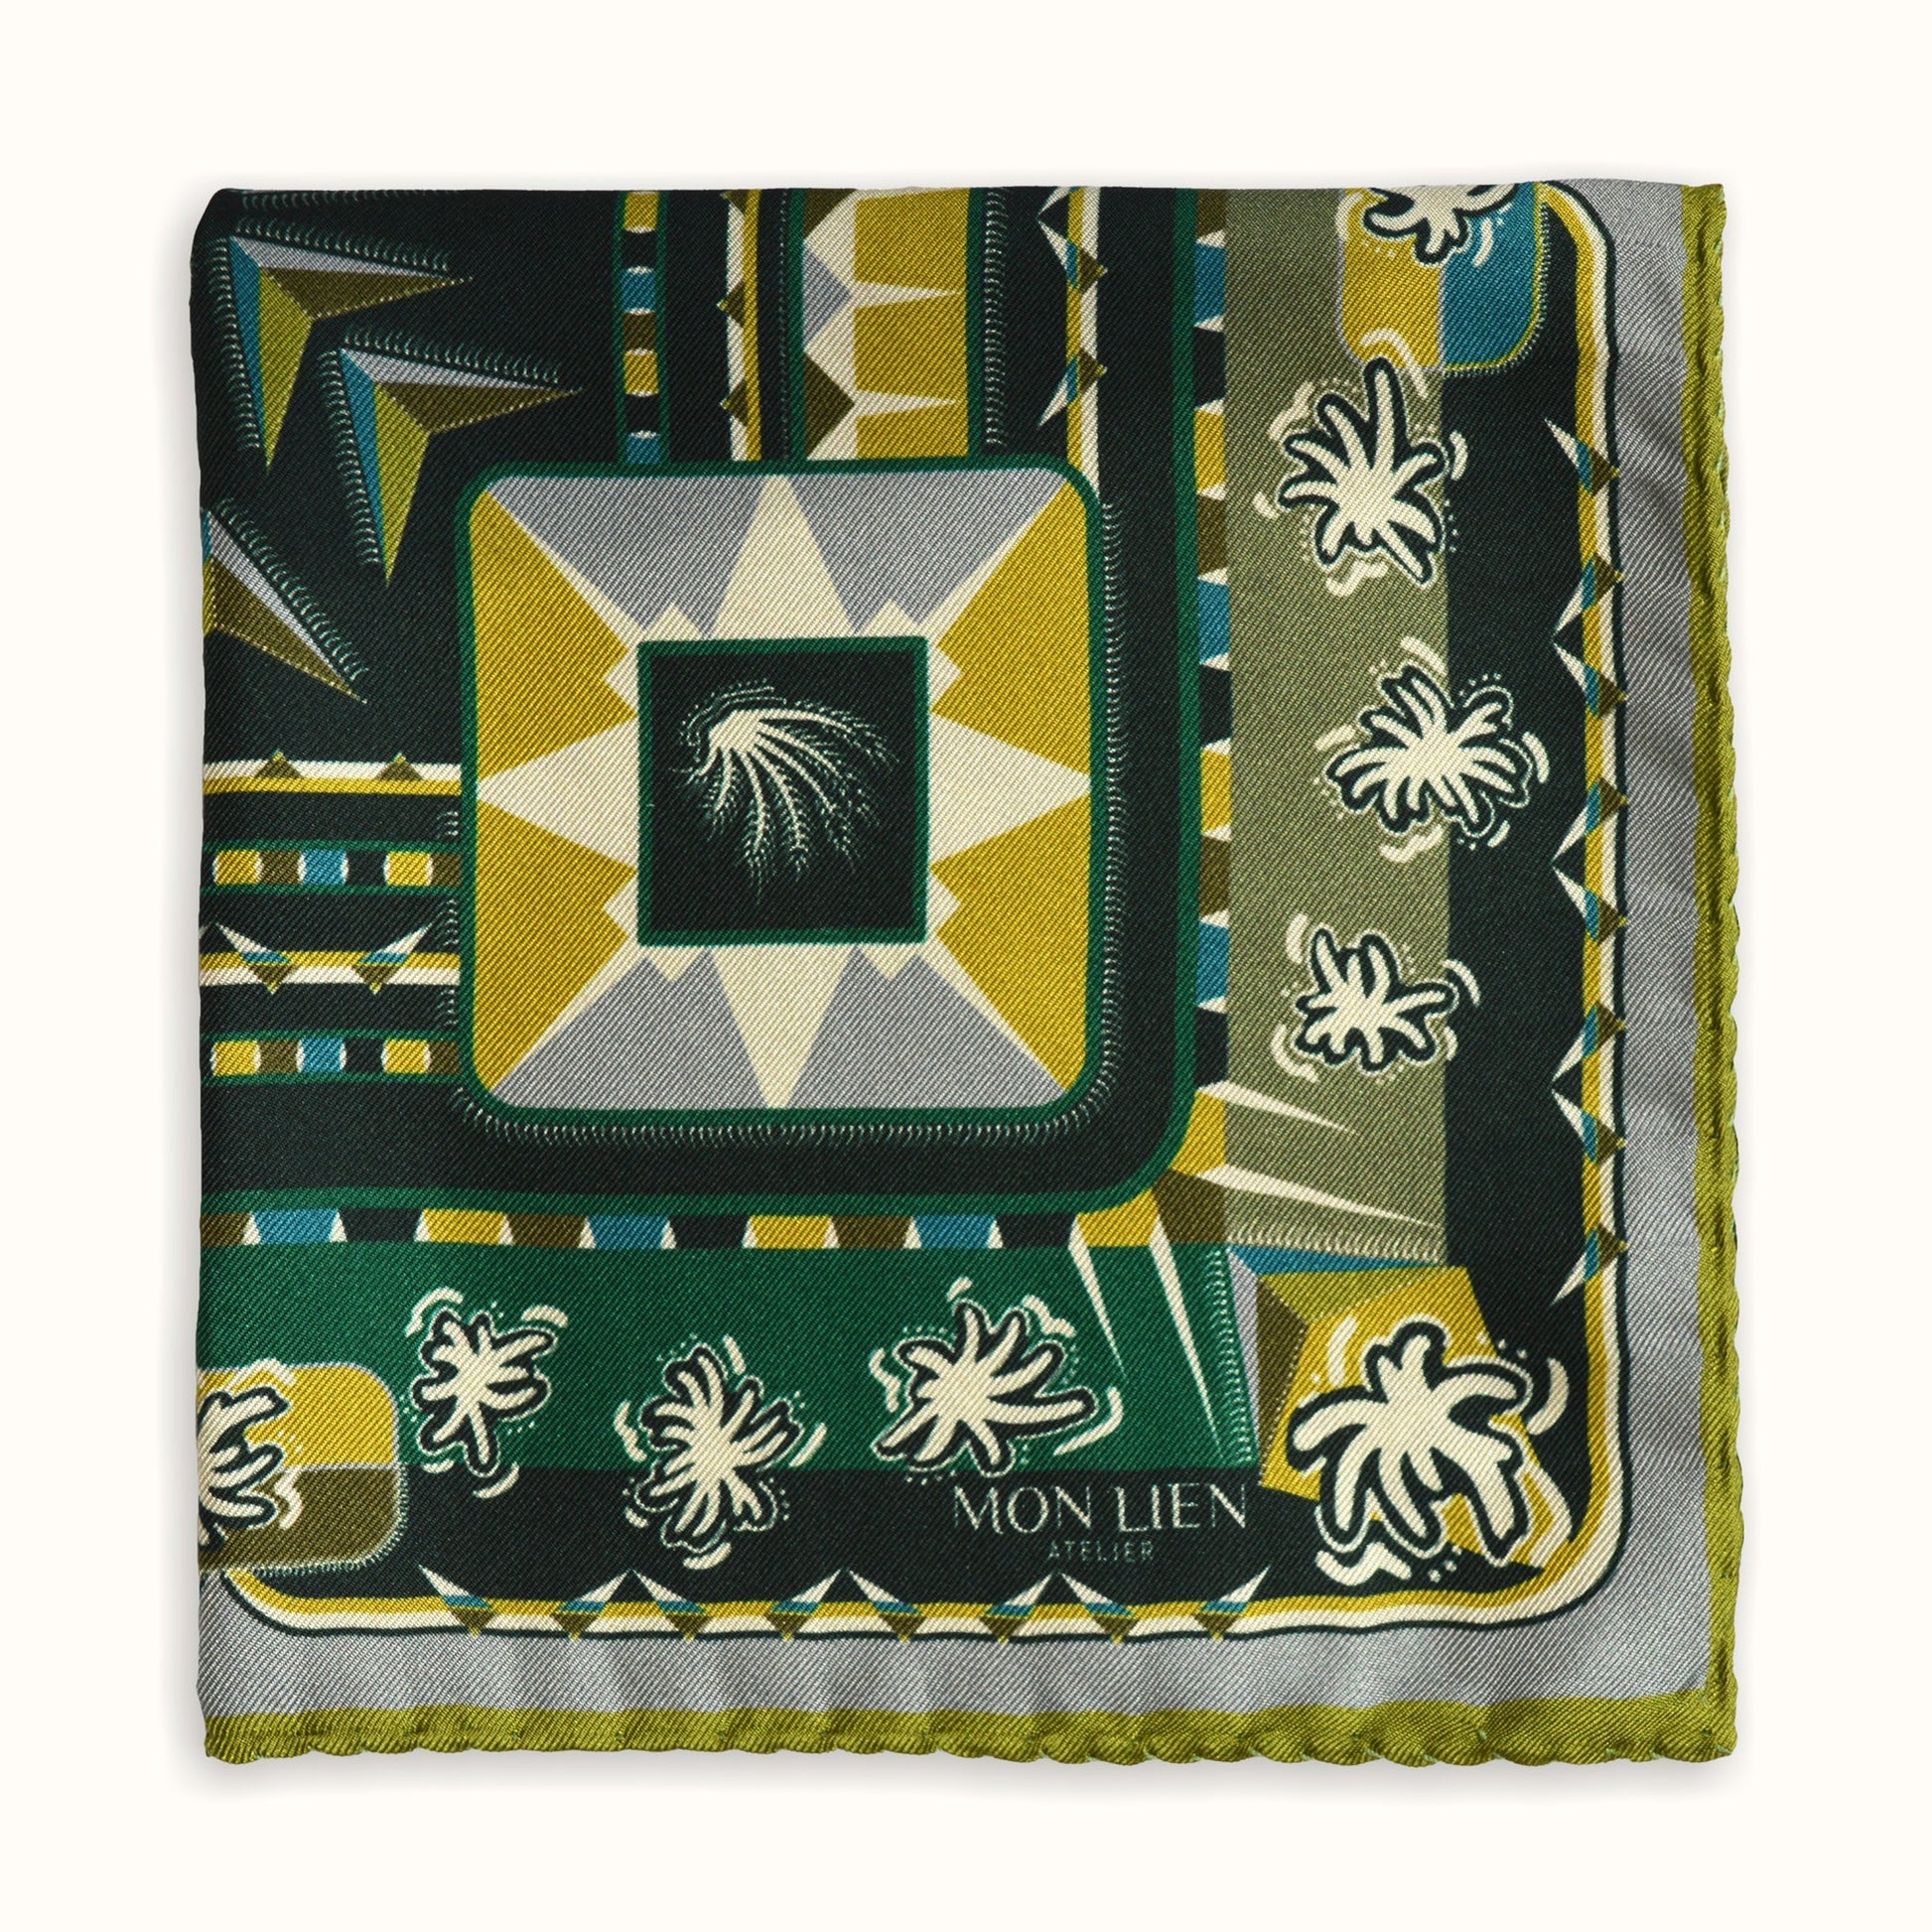 lussuosa pochette in seta piegata in quattro con disegno originale di tonalità verdi